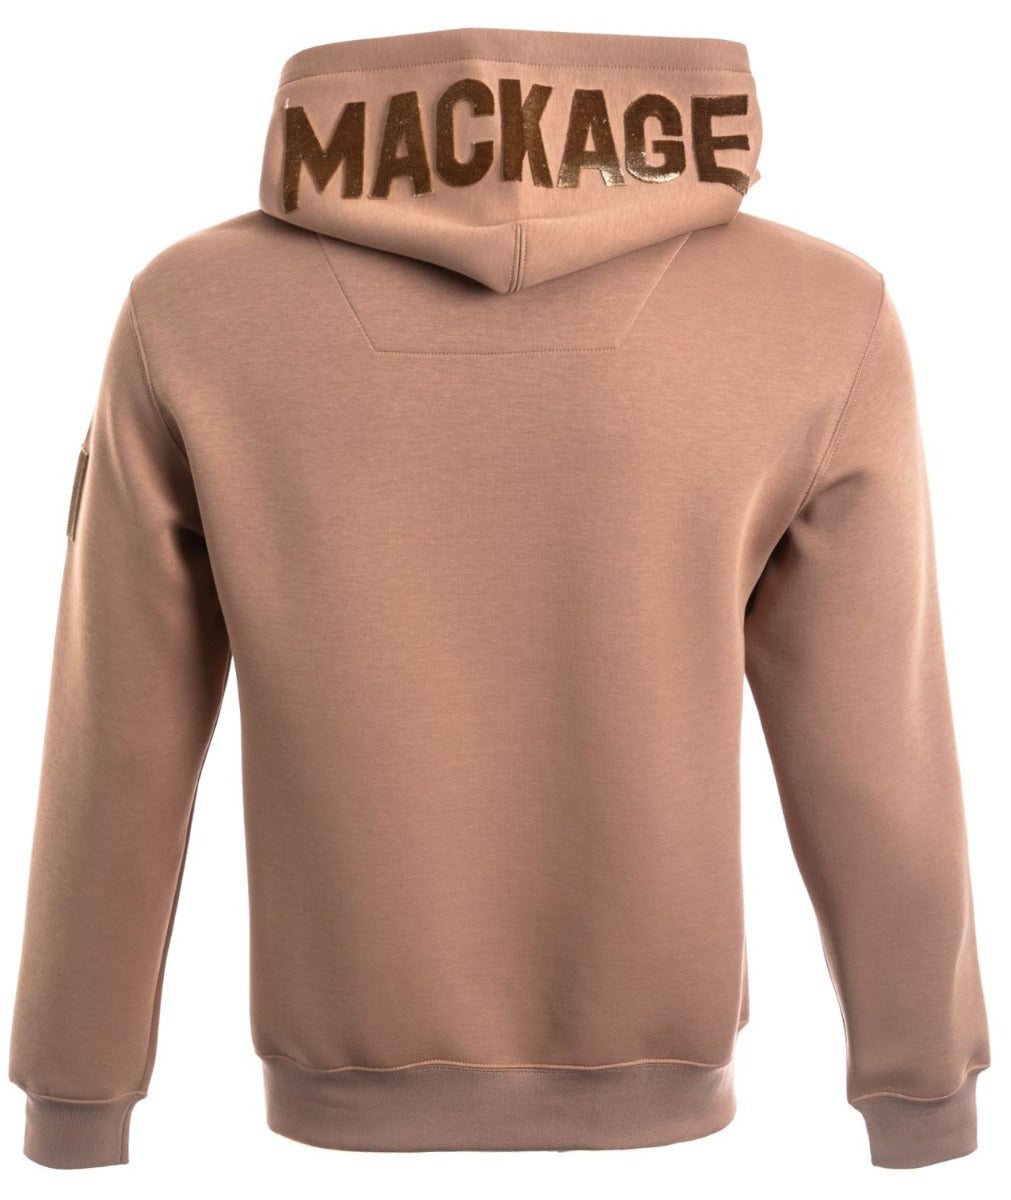 Mackage Krys-R Hooded Sweatshirt in Camel